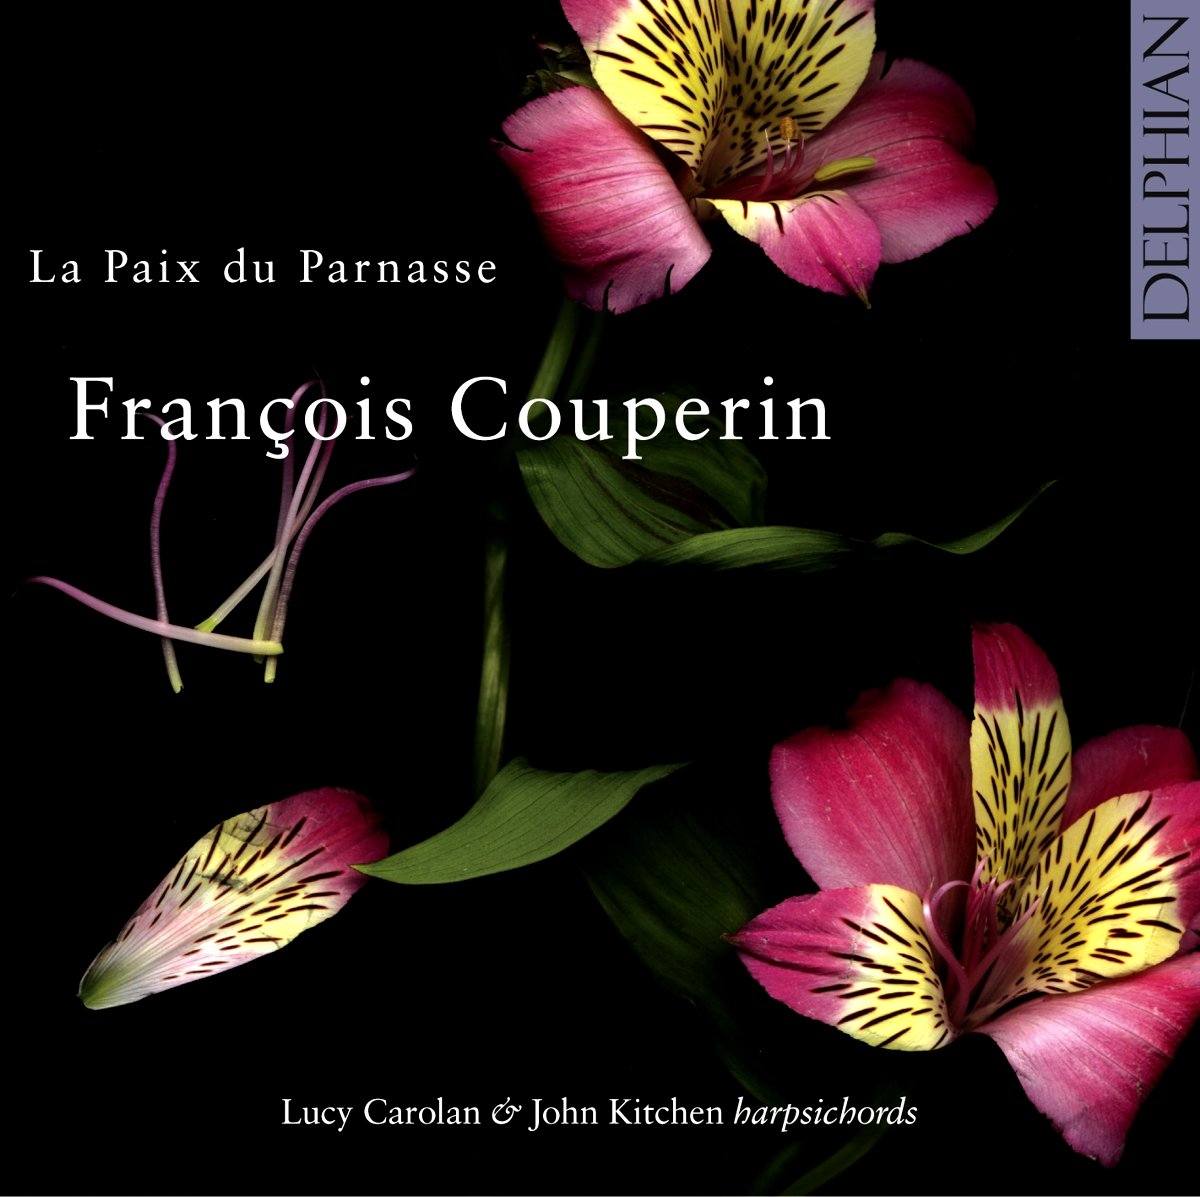 François Couperin: La Paix du Parnasse CD Delphian Records